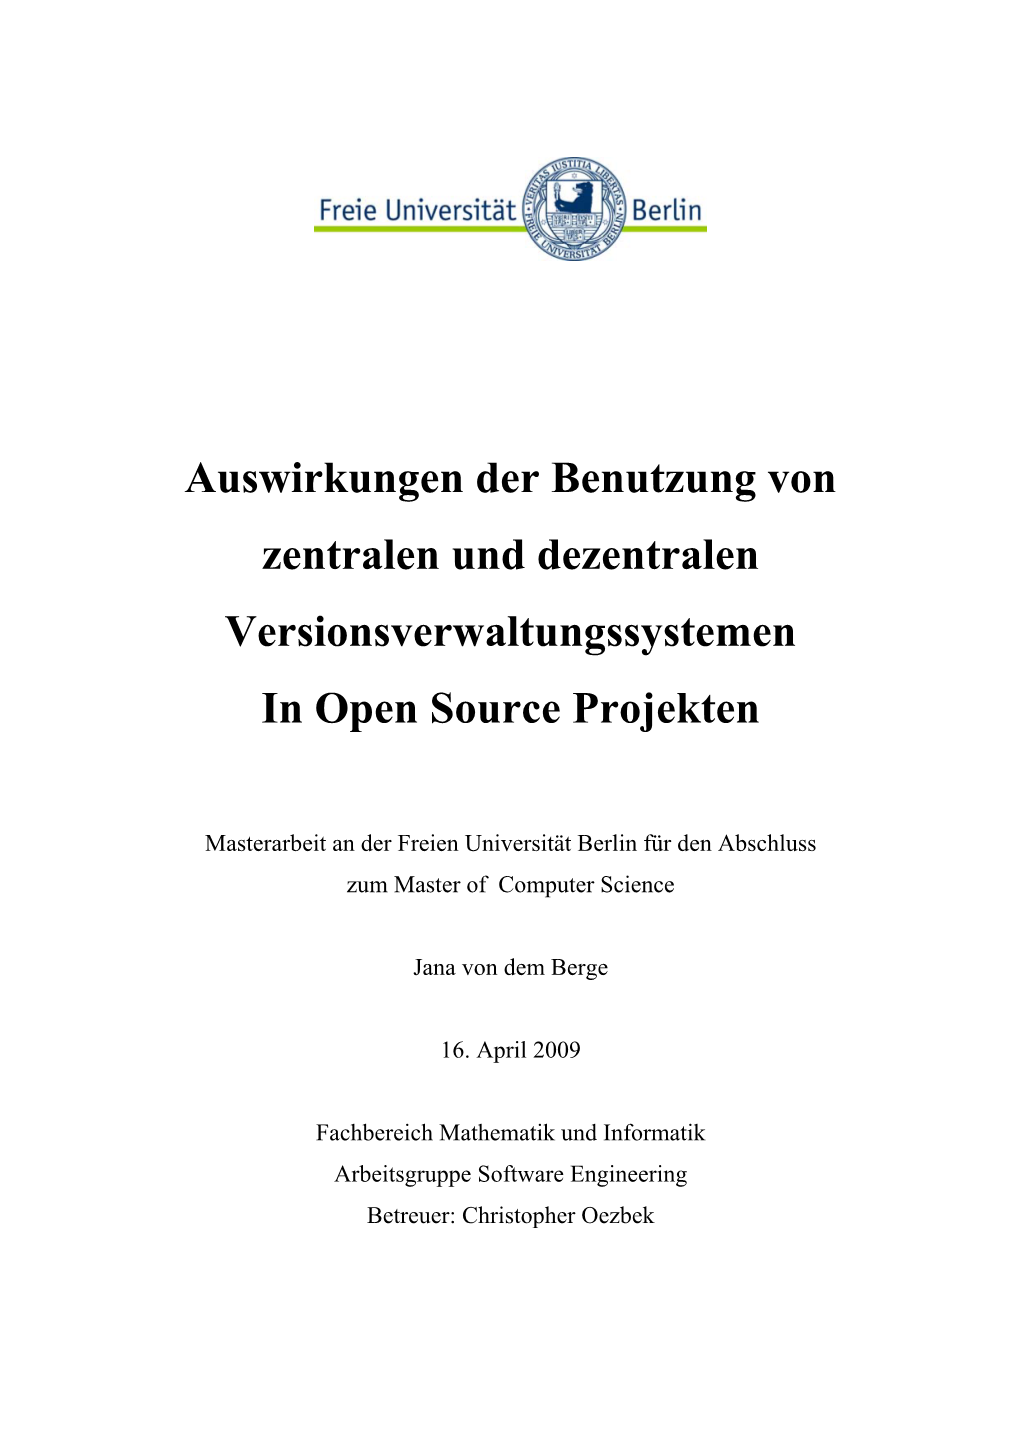 Auswirkungen Der Benutzung Von Zentralen Und Dezentralen Versionsverwaltungssystemen in Open Source Projekten